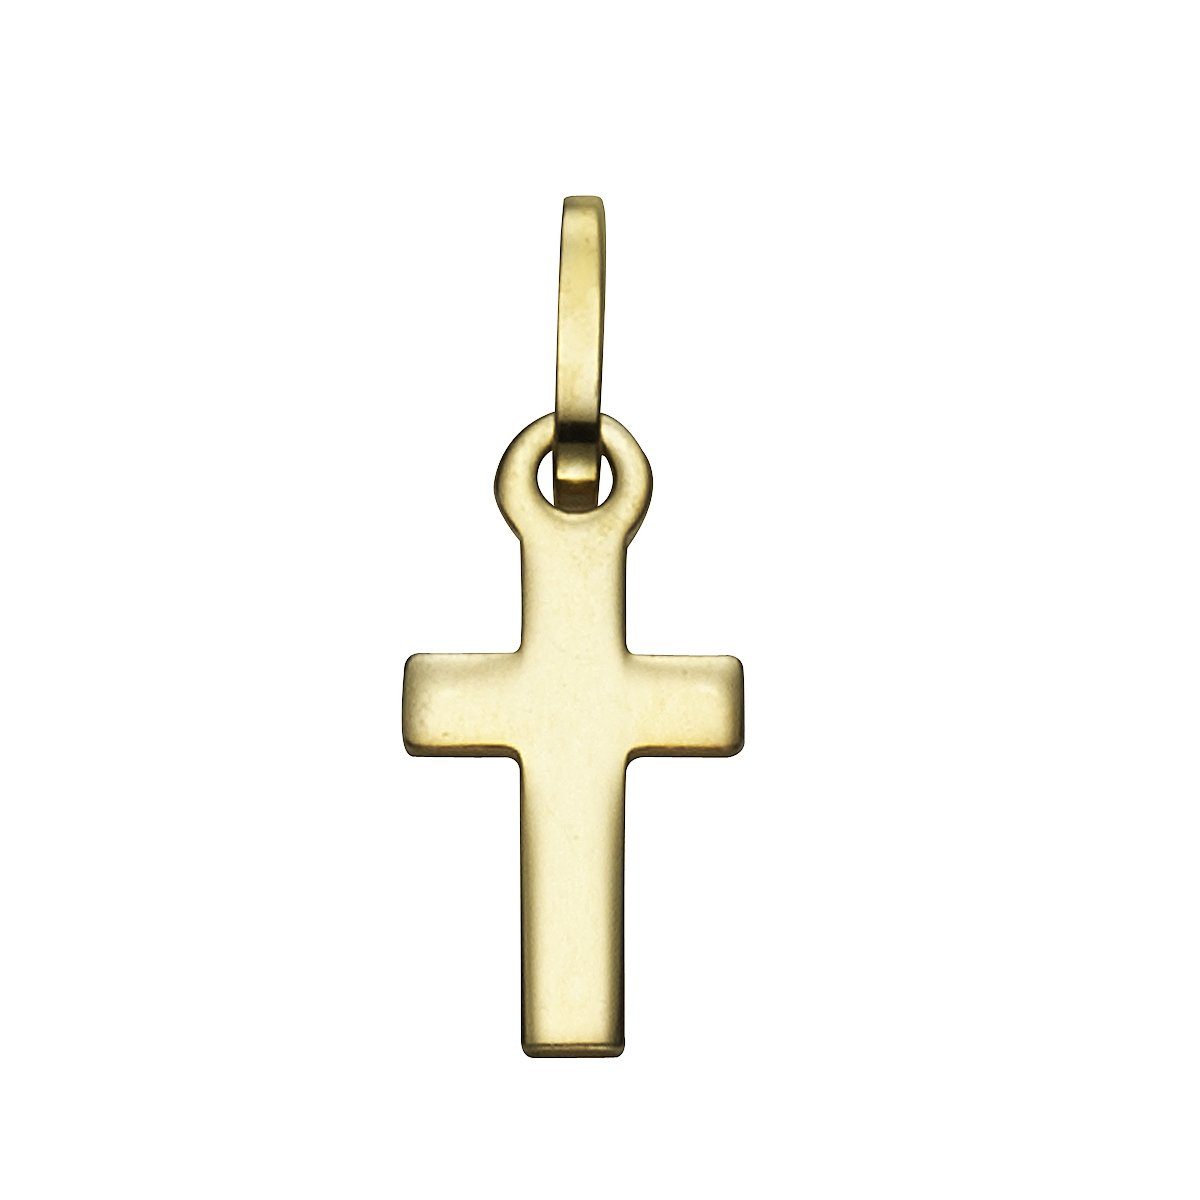 Vivance Kettenanhänger 333 Gold Motiv Kreuz | Kettenanhänger